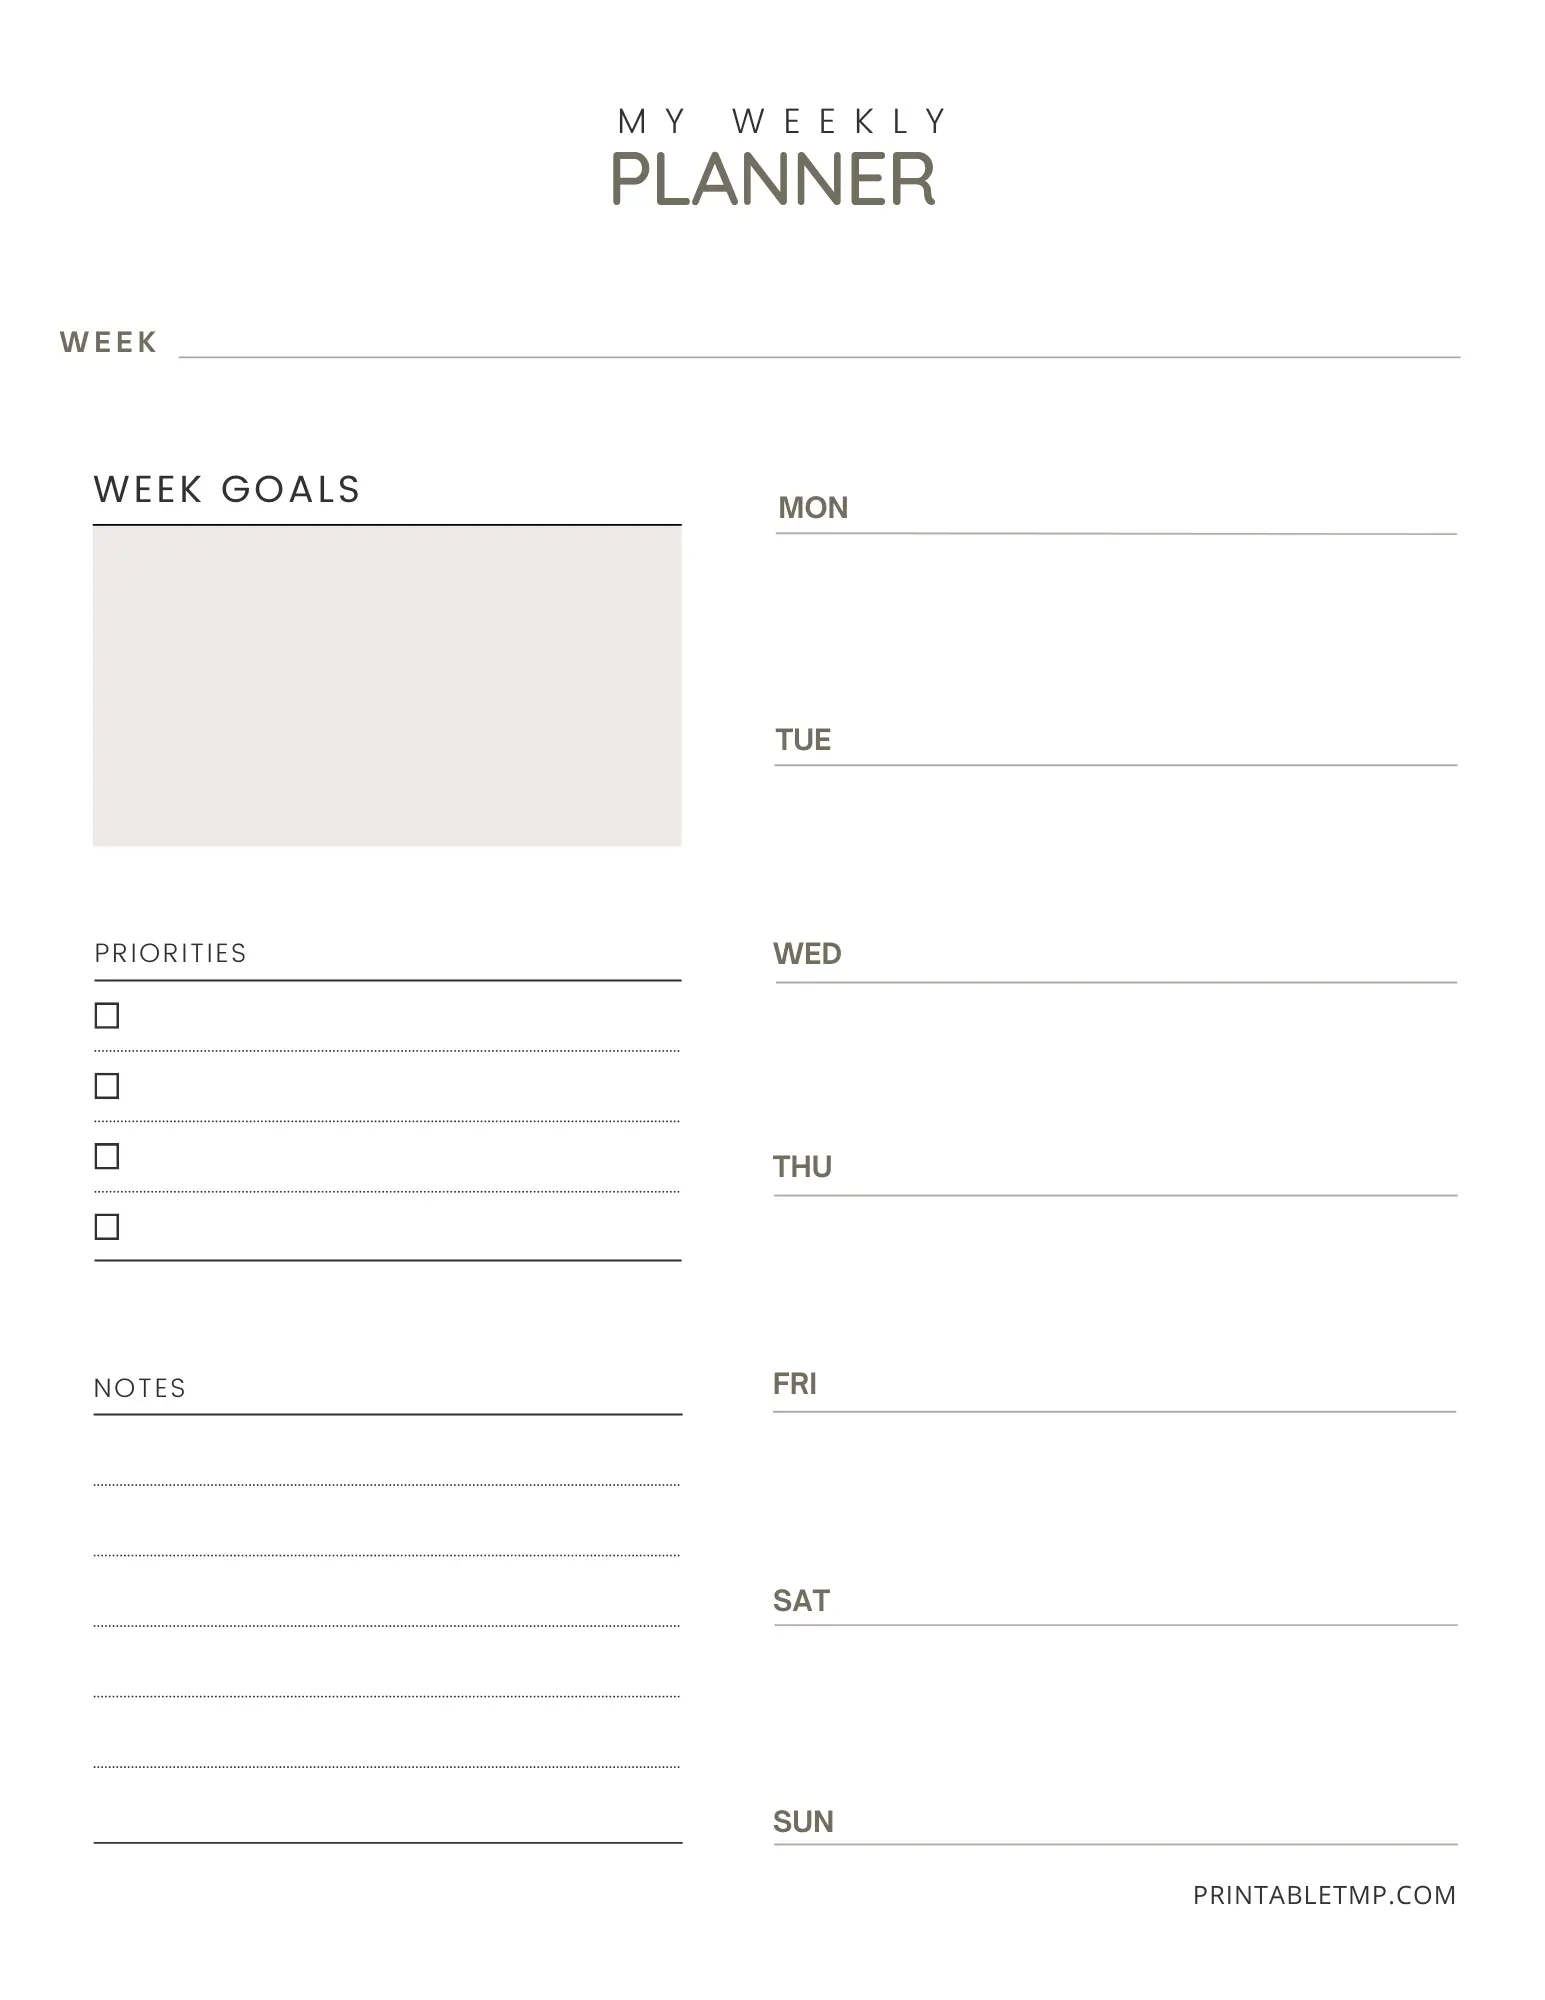 Blank Weekly Planner Printable Free